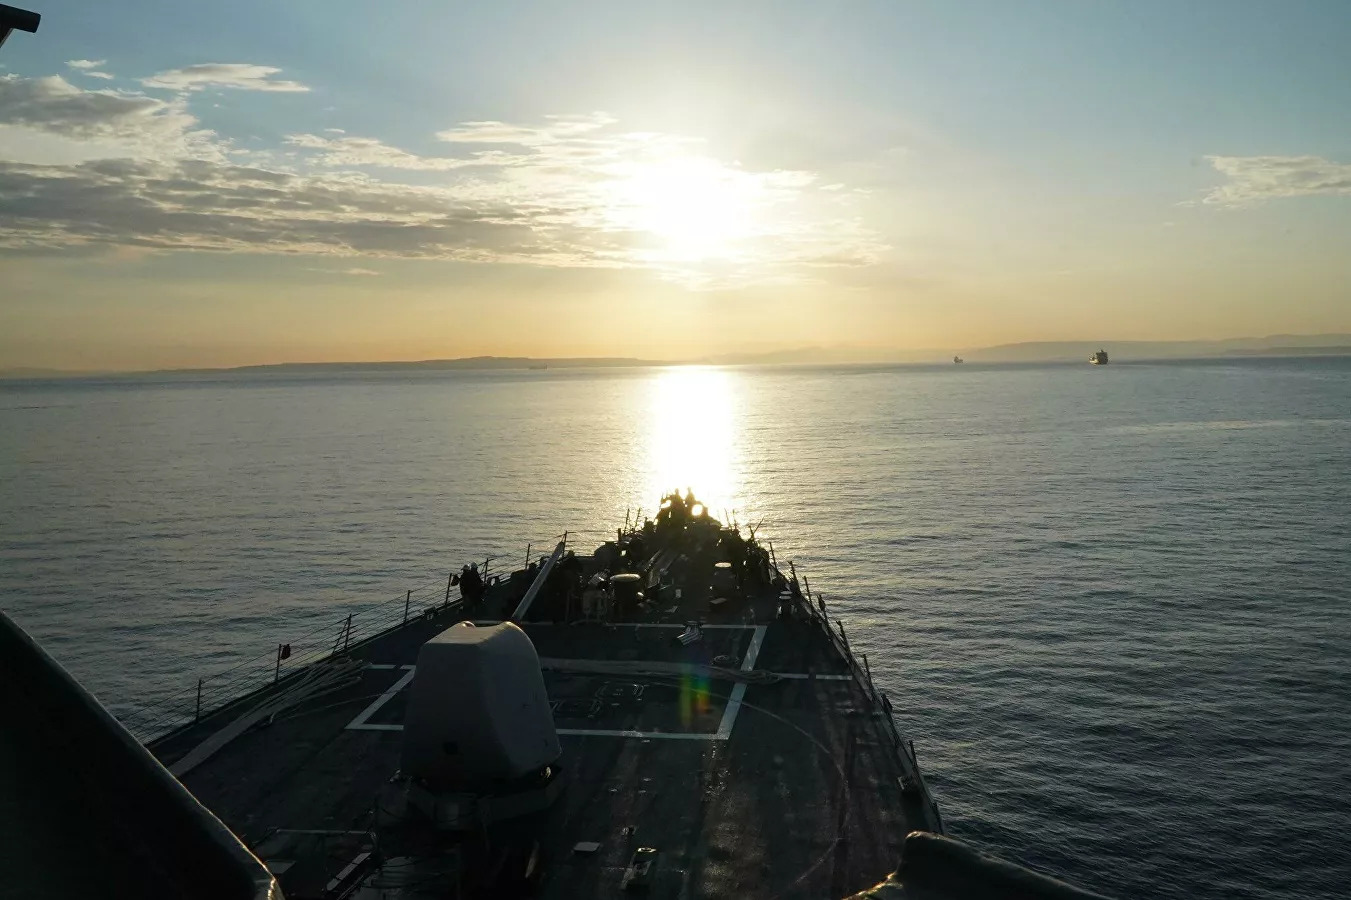 U.S. Sends Coast Guard Patrol Ship To Black Sea, As Two Russian Landing Ships Remain